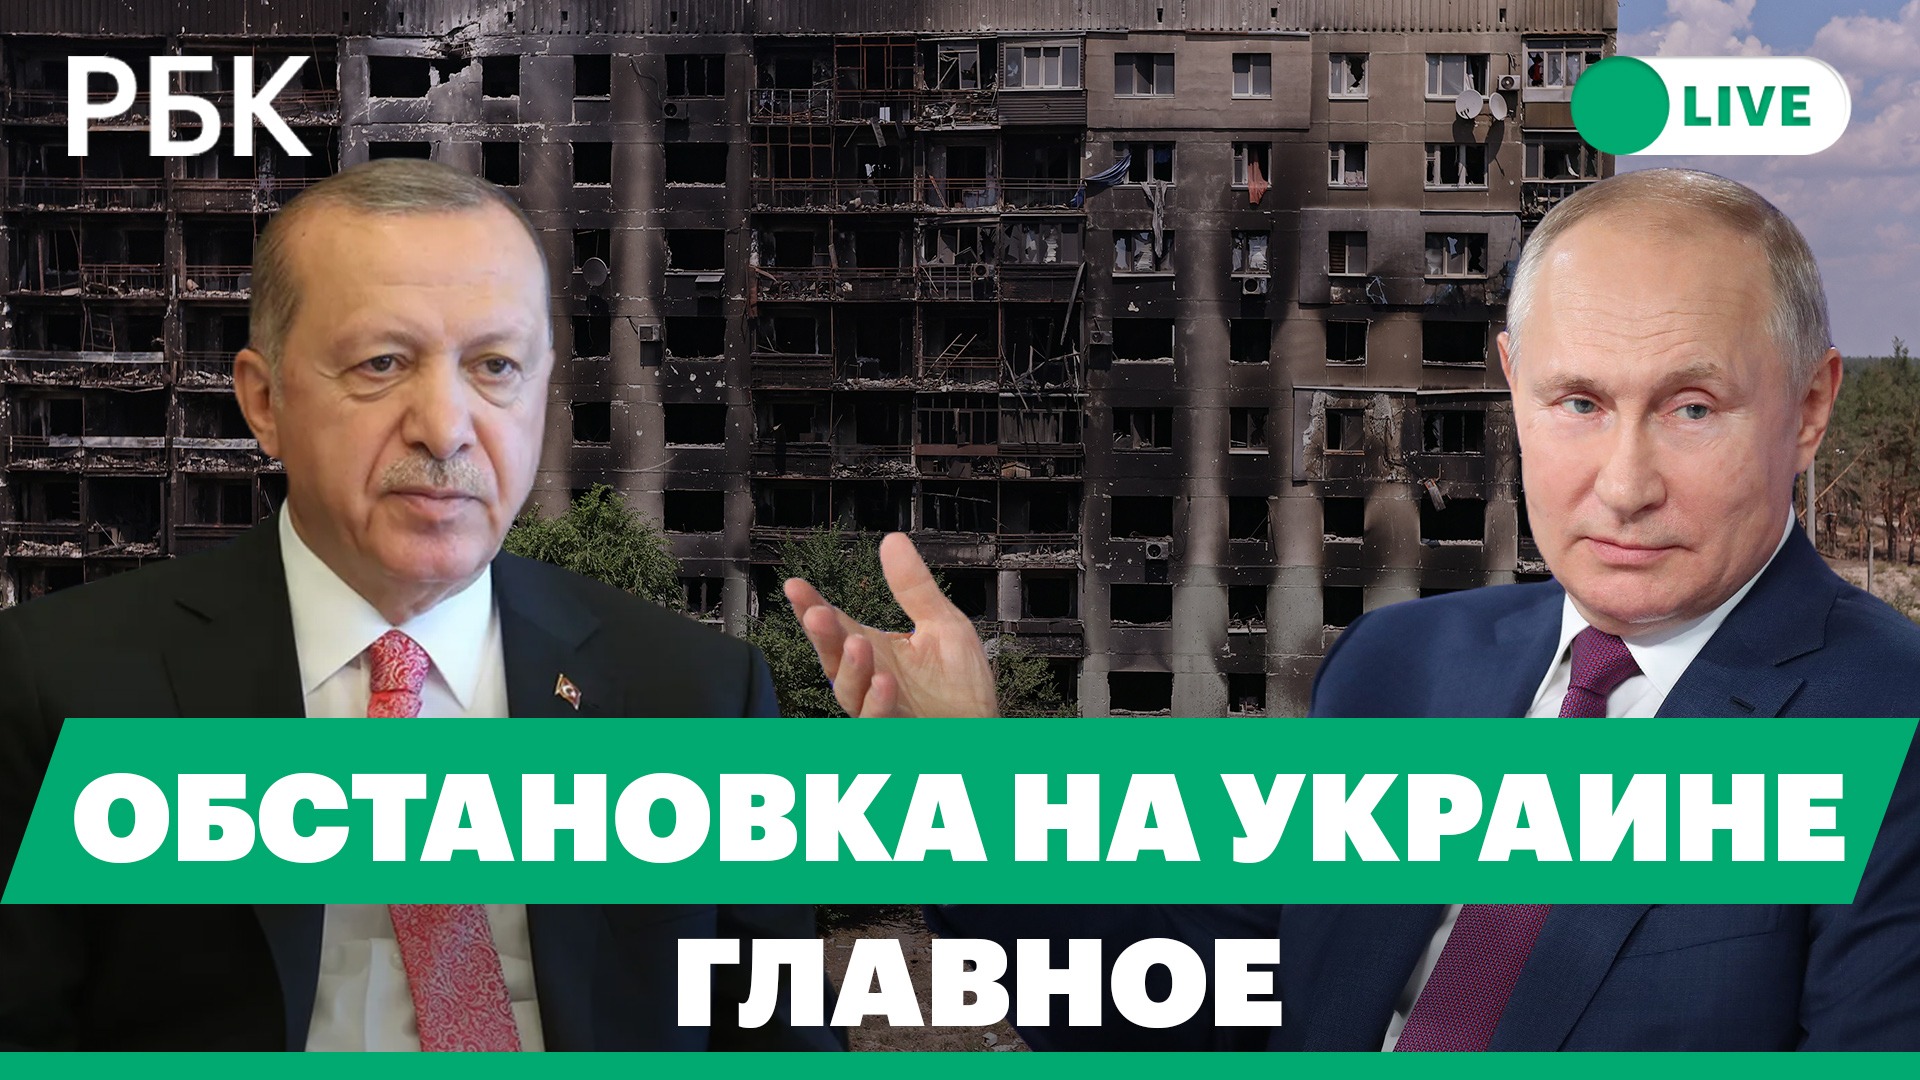 Кадыров посоветовал ВСУ бежать. Зеленский о «мелких провокациях» со стороны Приднестровья